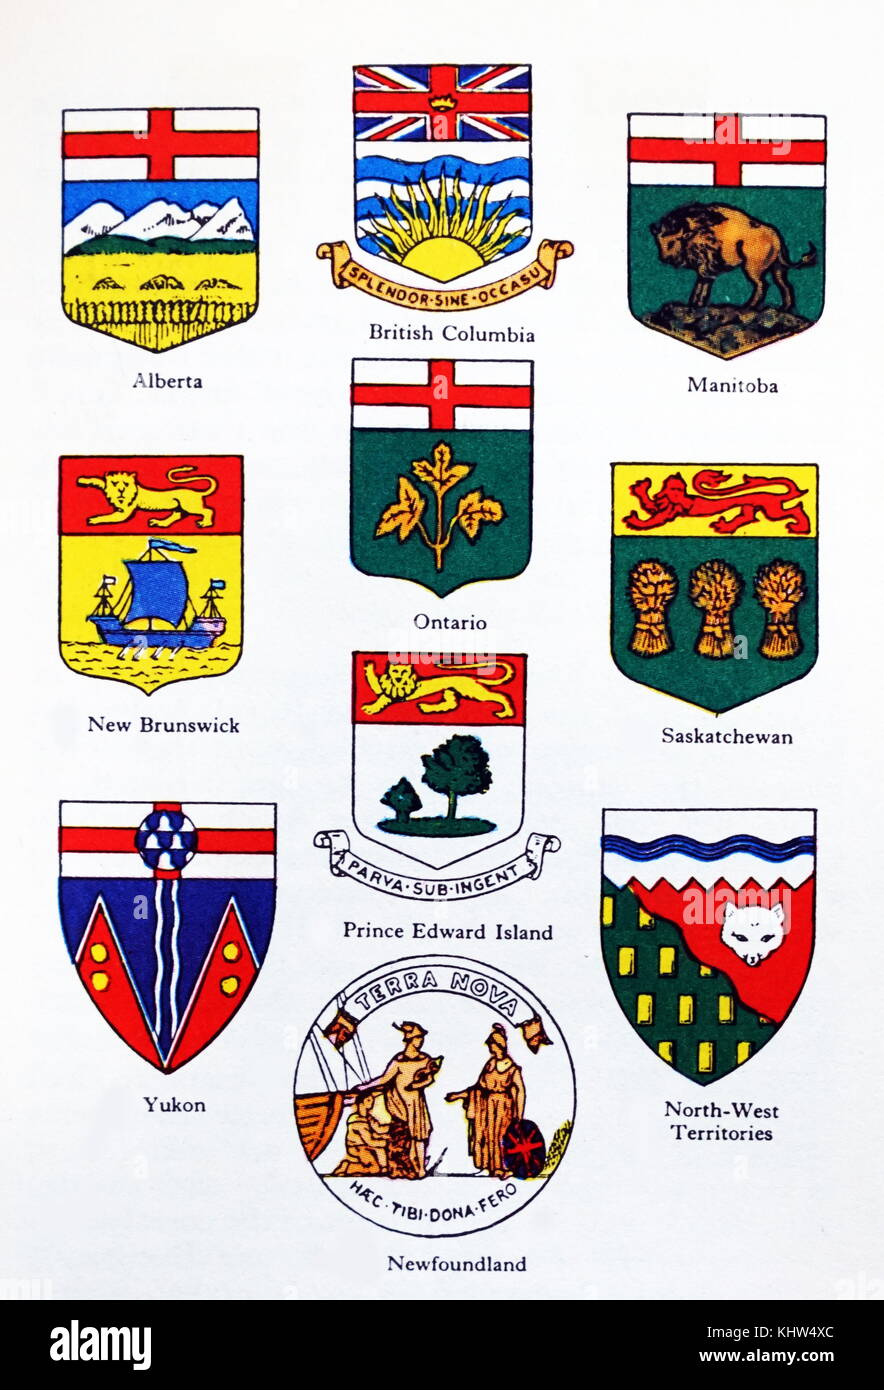 Illustration montrant les insignes des provinces et territoires canadiens. En date du 20e siècle Banque D'Images